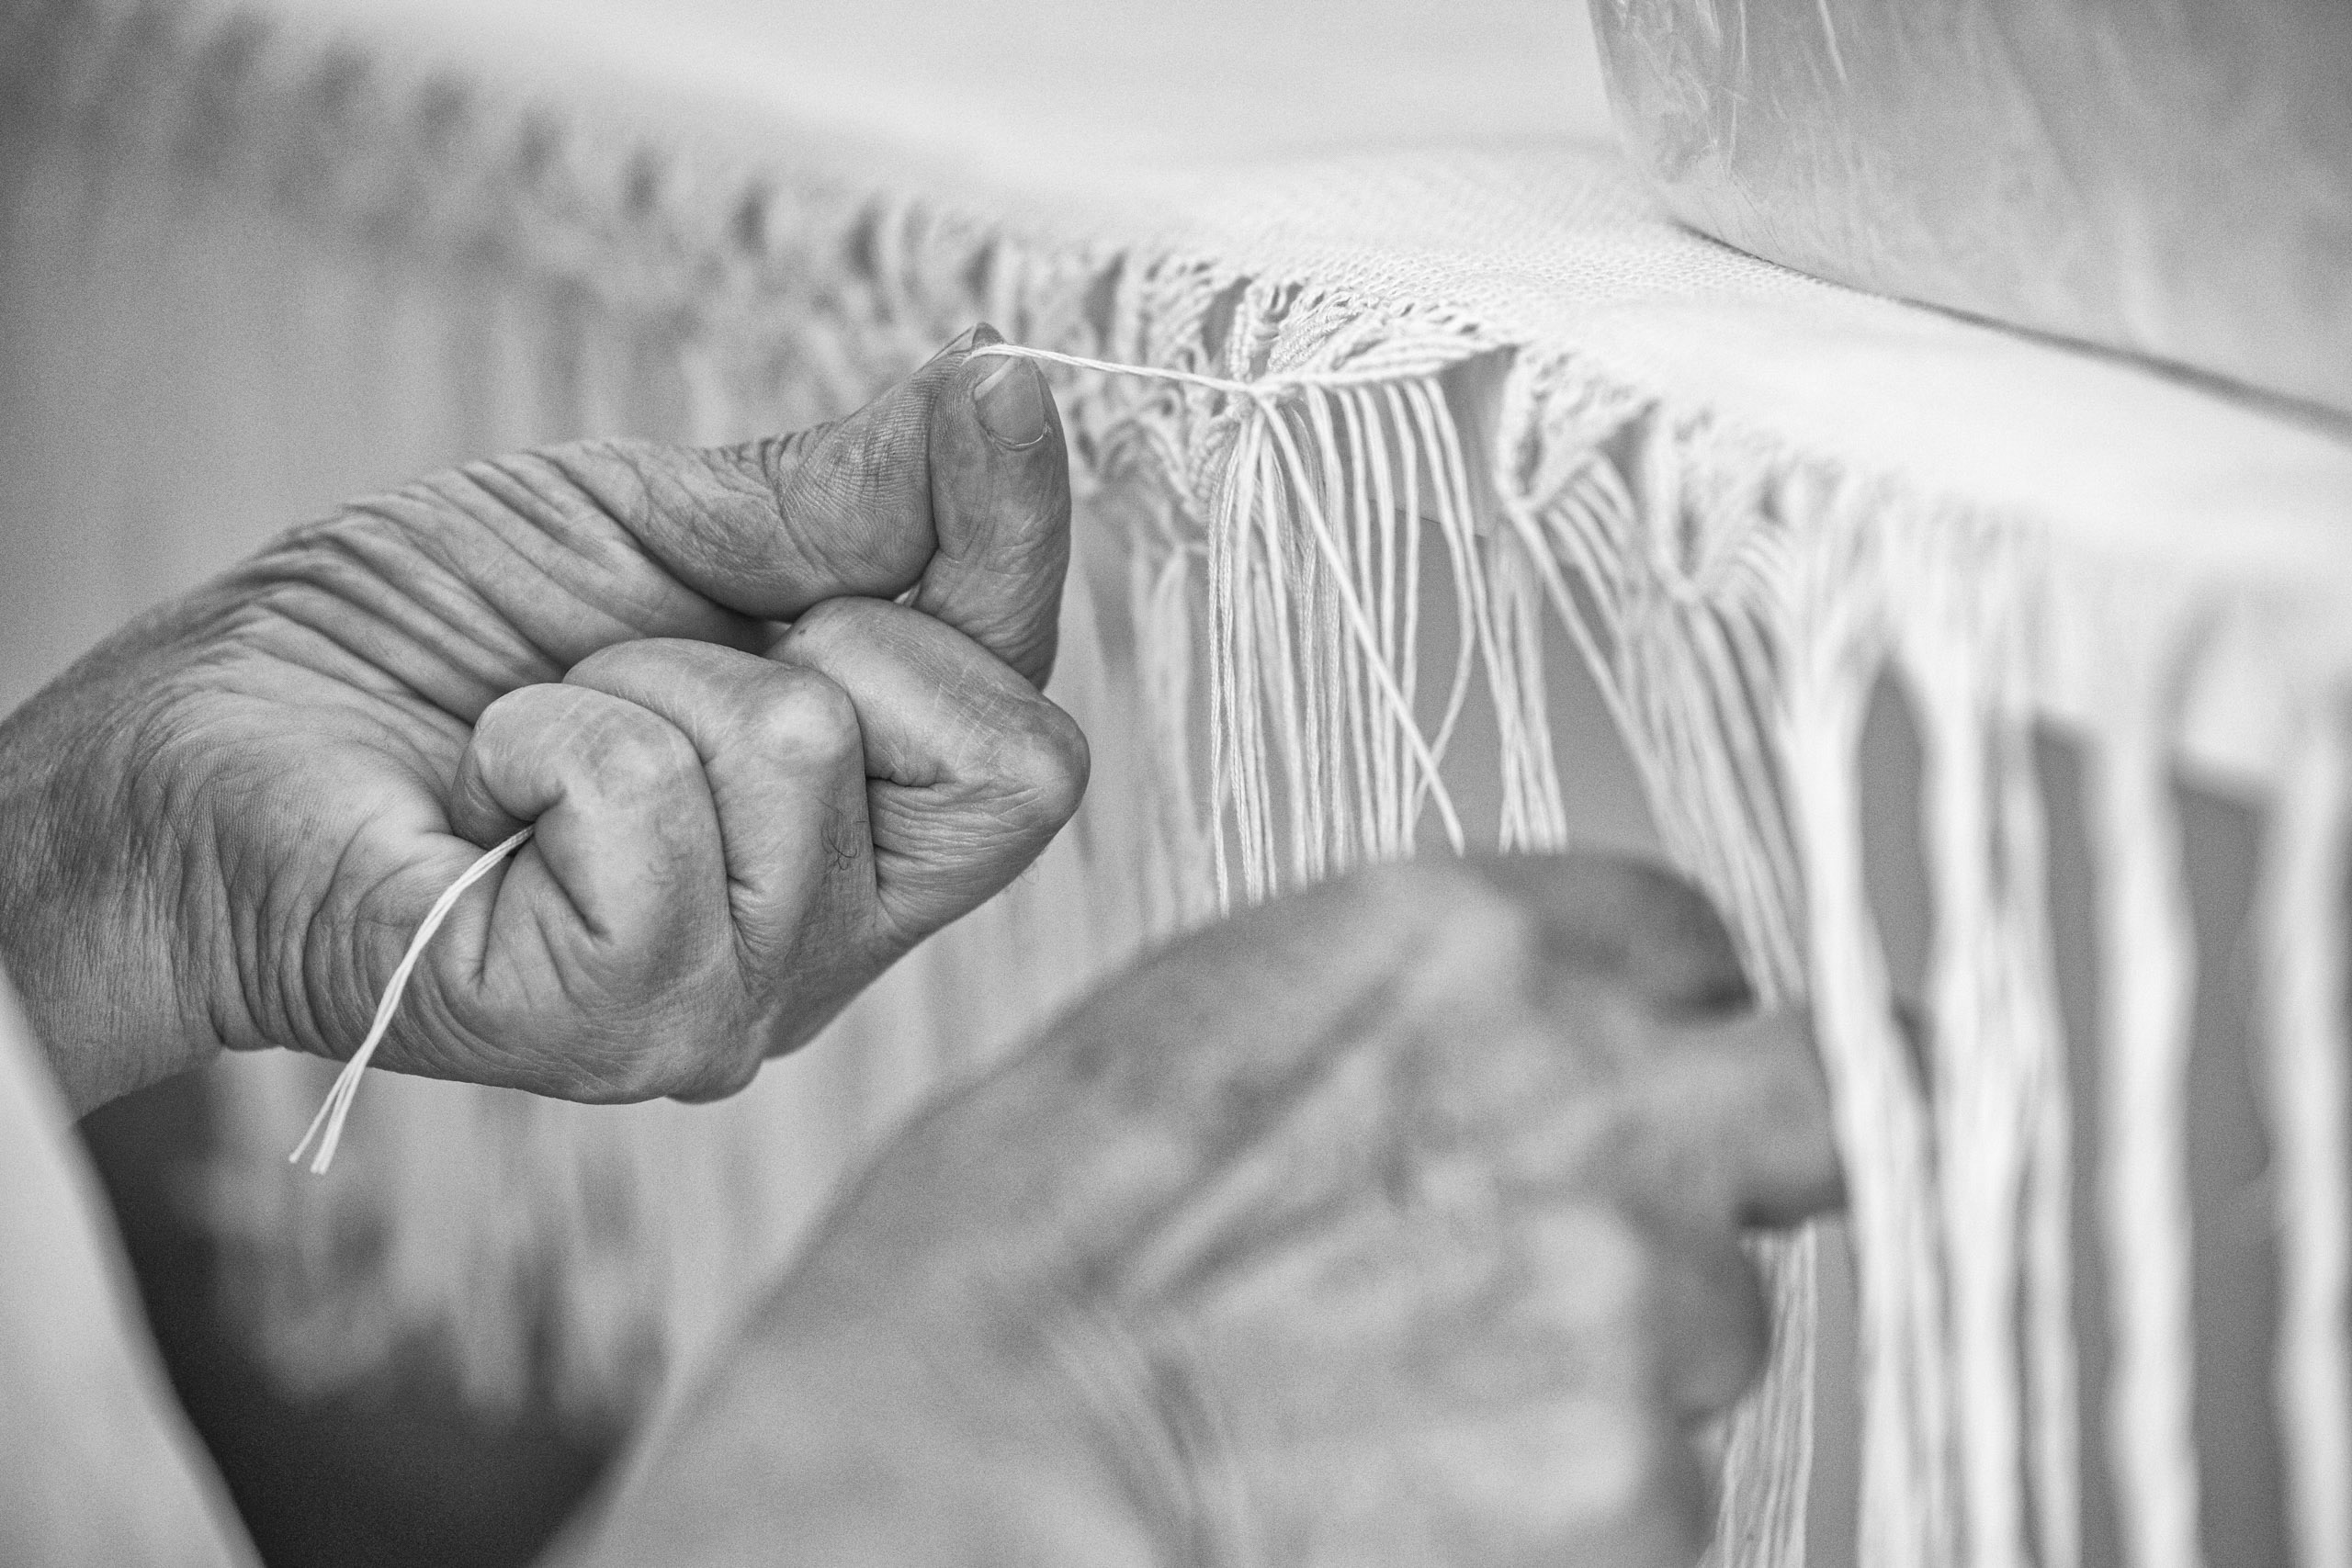 Nahaufnahme älterer Hände, die geschickt Fransen in einen Stoff binden, wobei der Schwerpunkt auf der präzisen Bewegung und der zarten Berührung in einer monochromen Umgebung liegt. © Fotografie Tomas Rodriguez